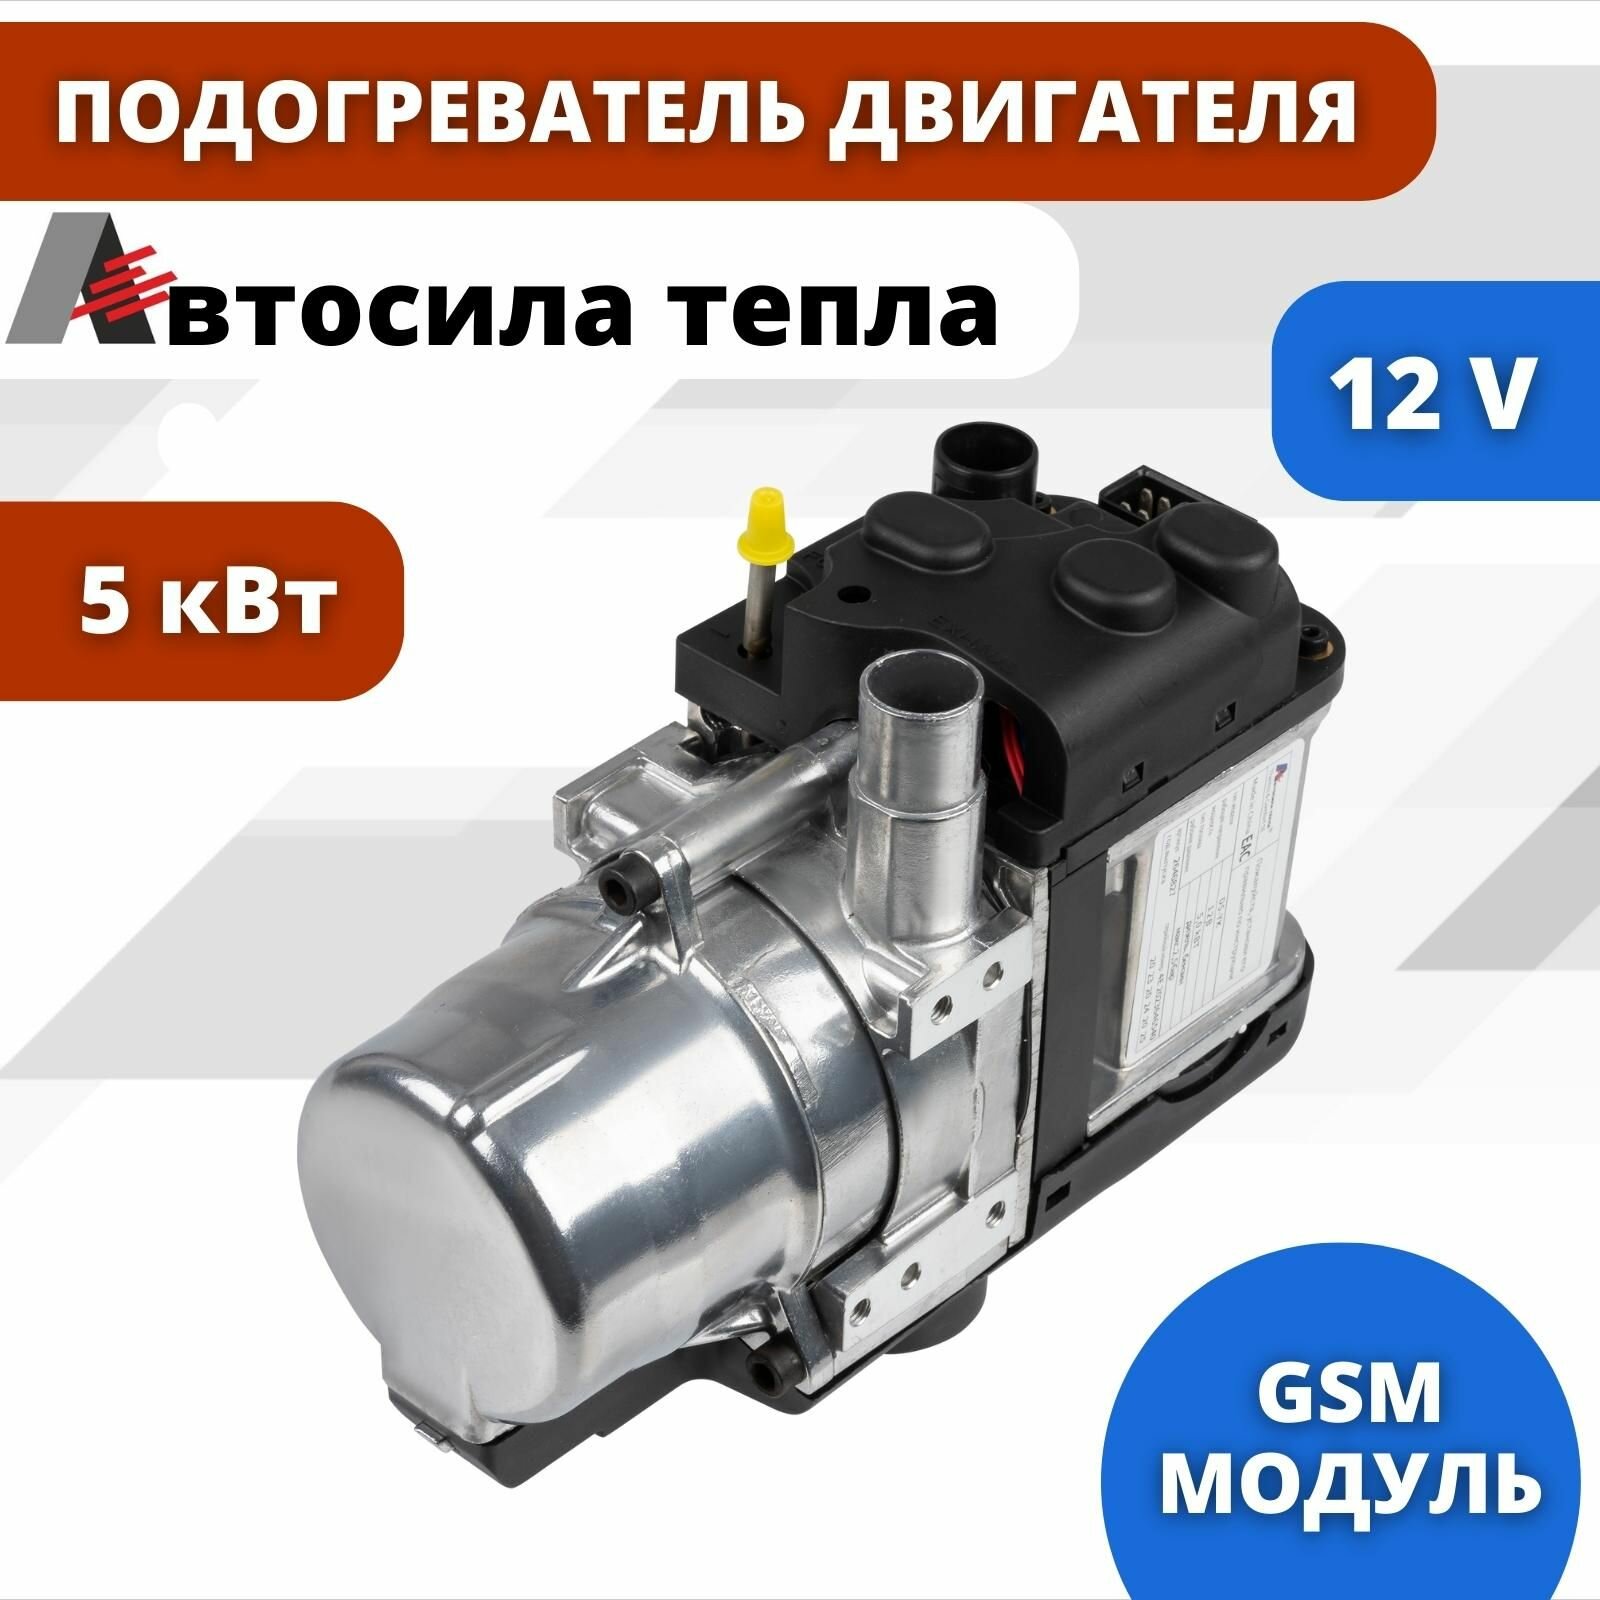 D5-YK 12В Предпусковой автономный подогреватель двигателя / Автосила Тепла / мокрый фен